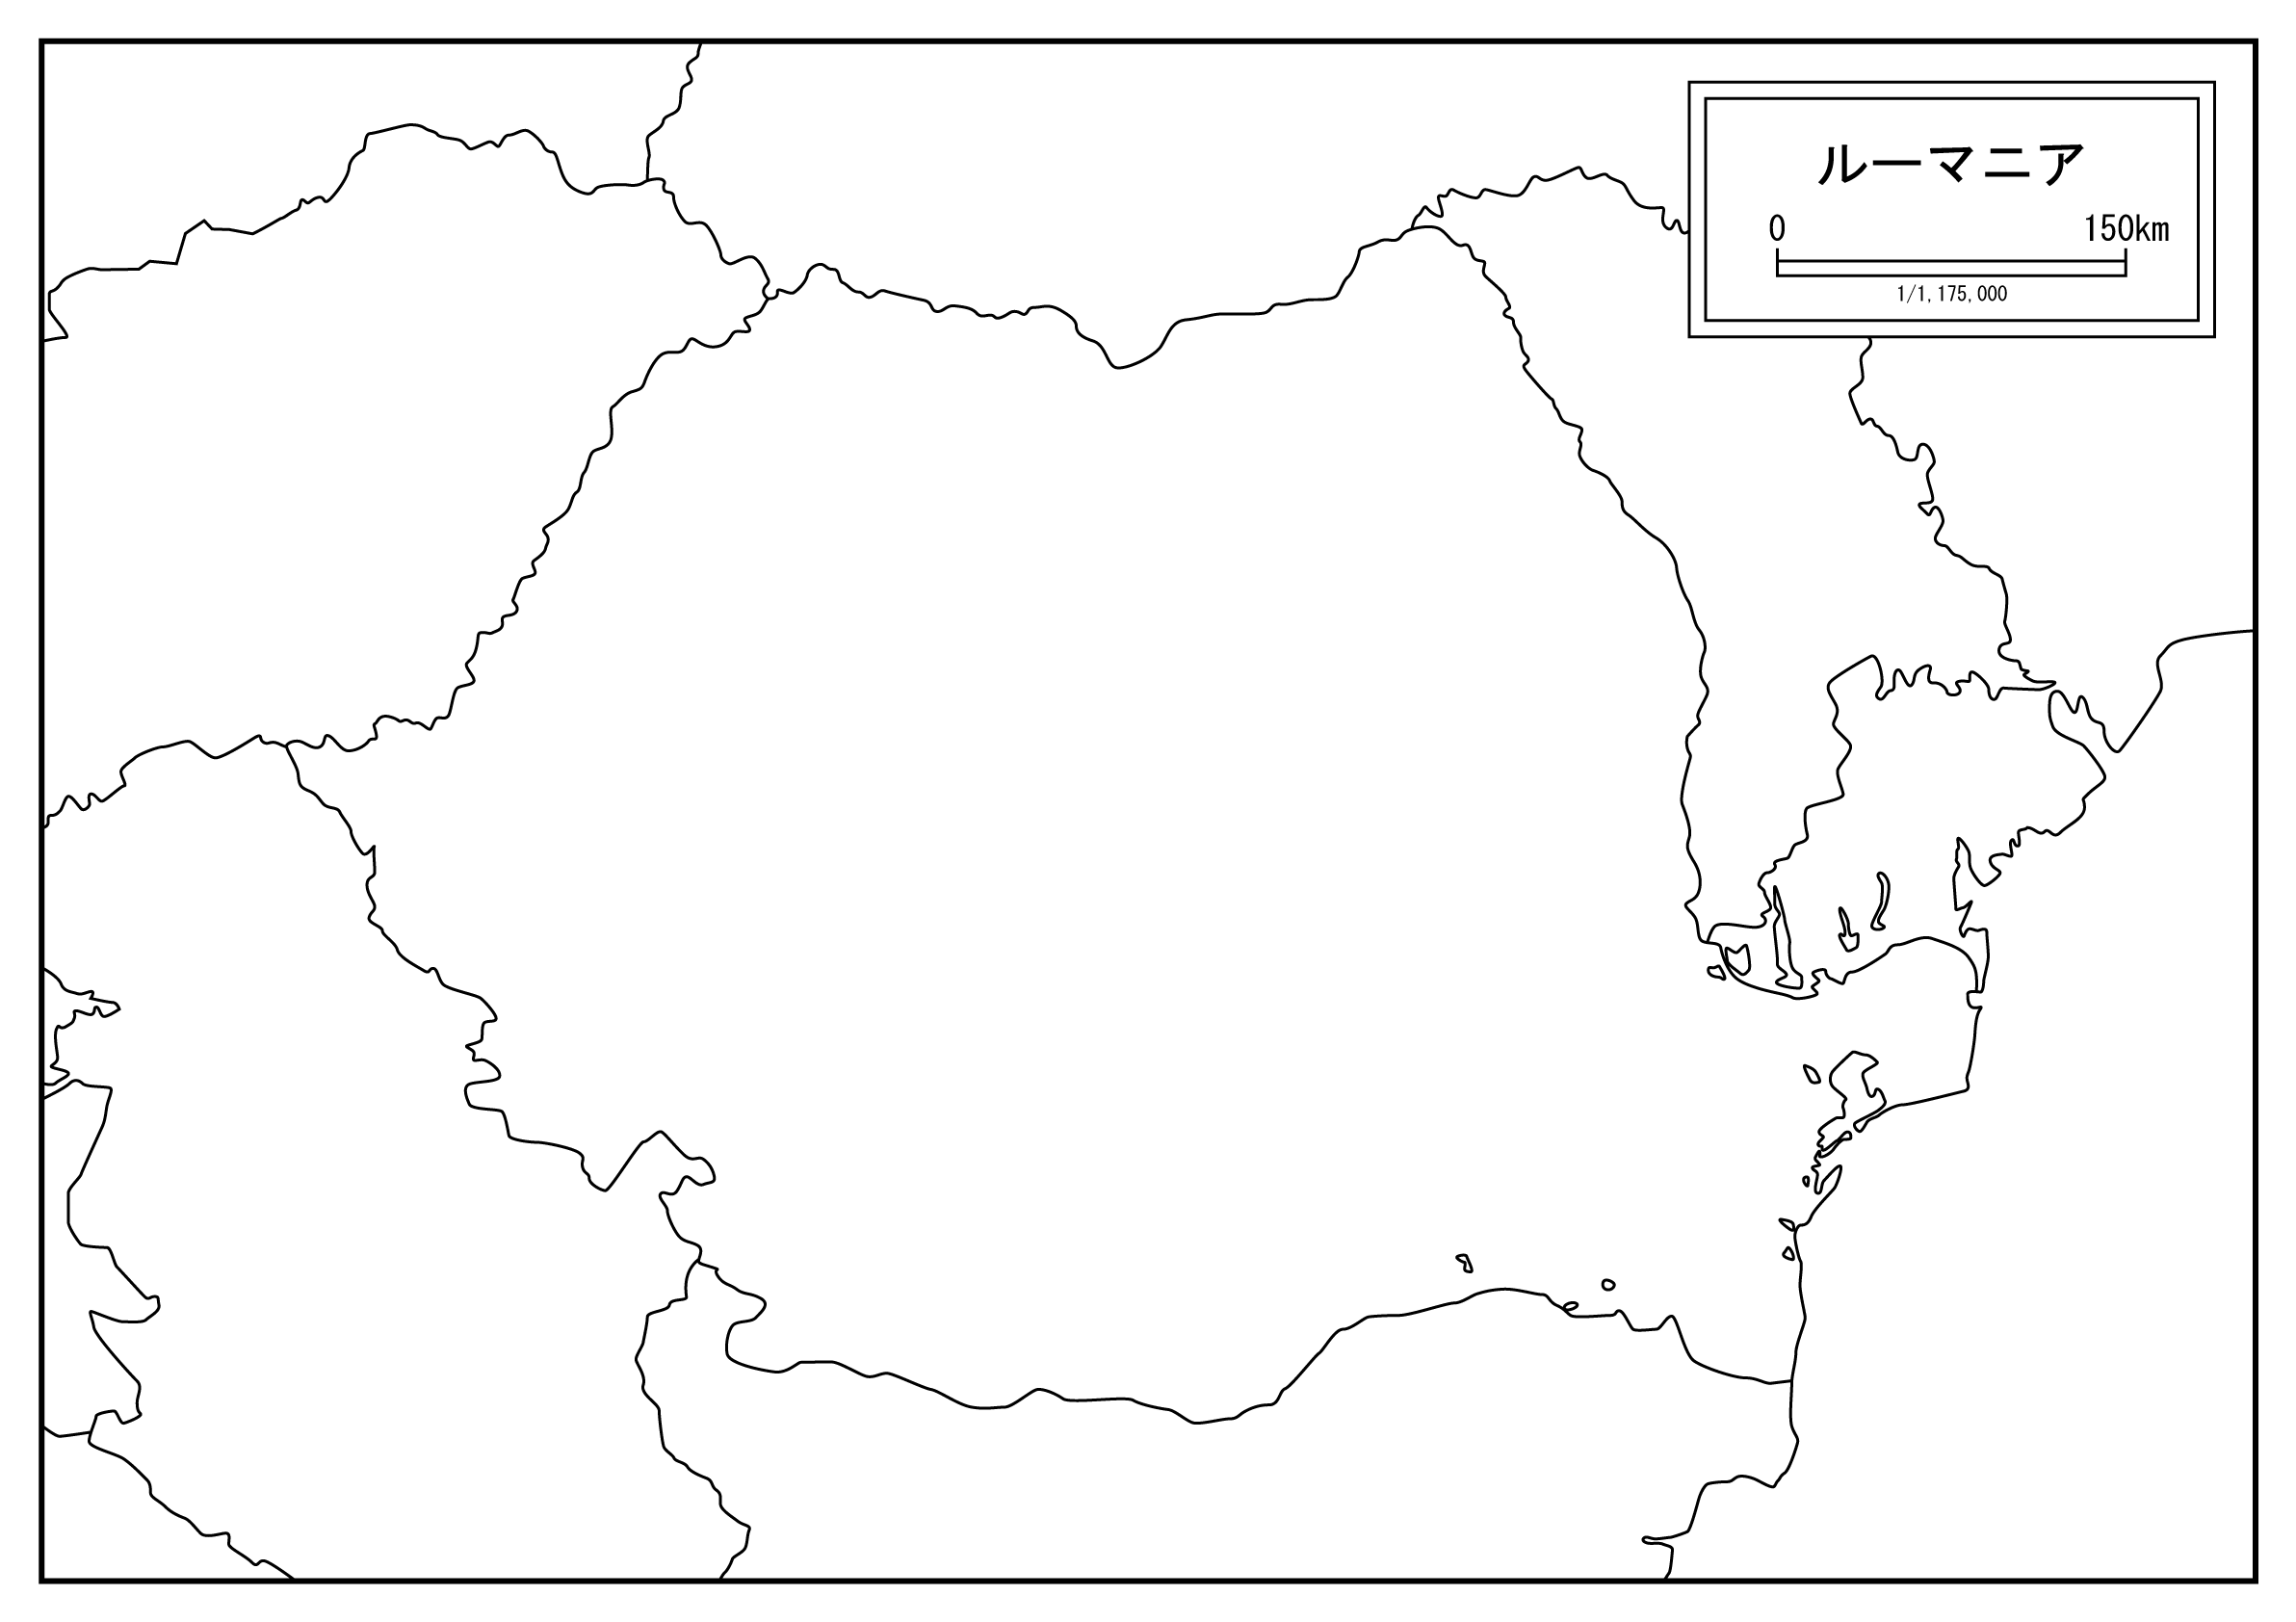 ルーマニアの白地図を無料ダウンロードdownload romania's map for free of charge.